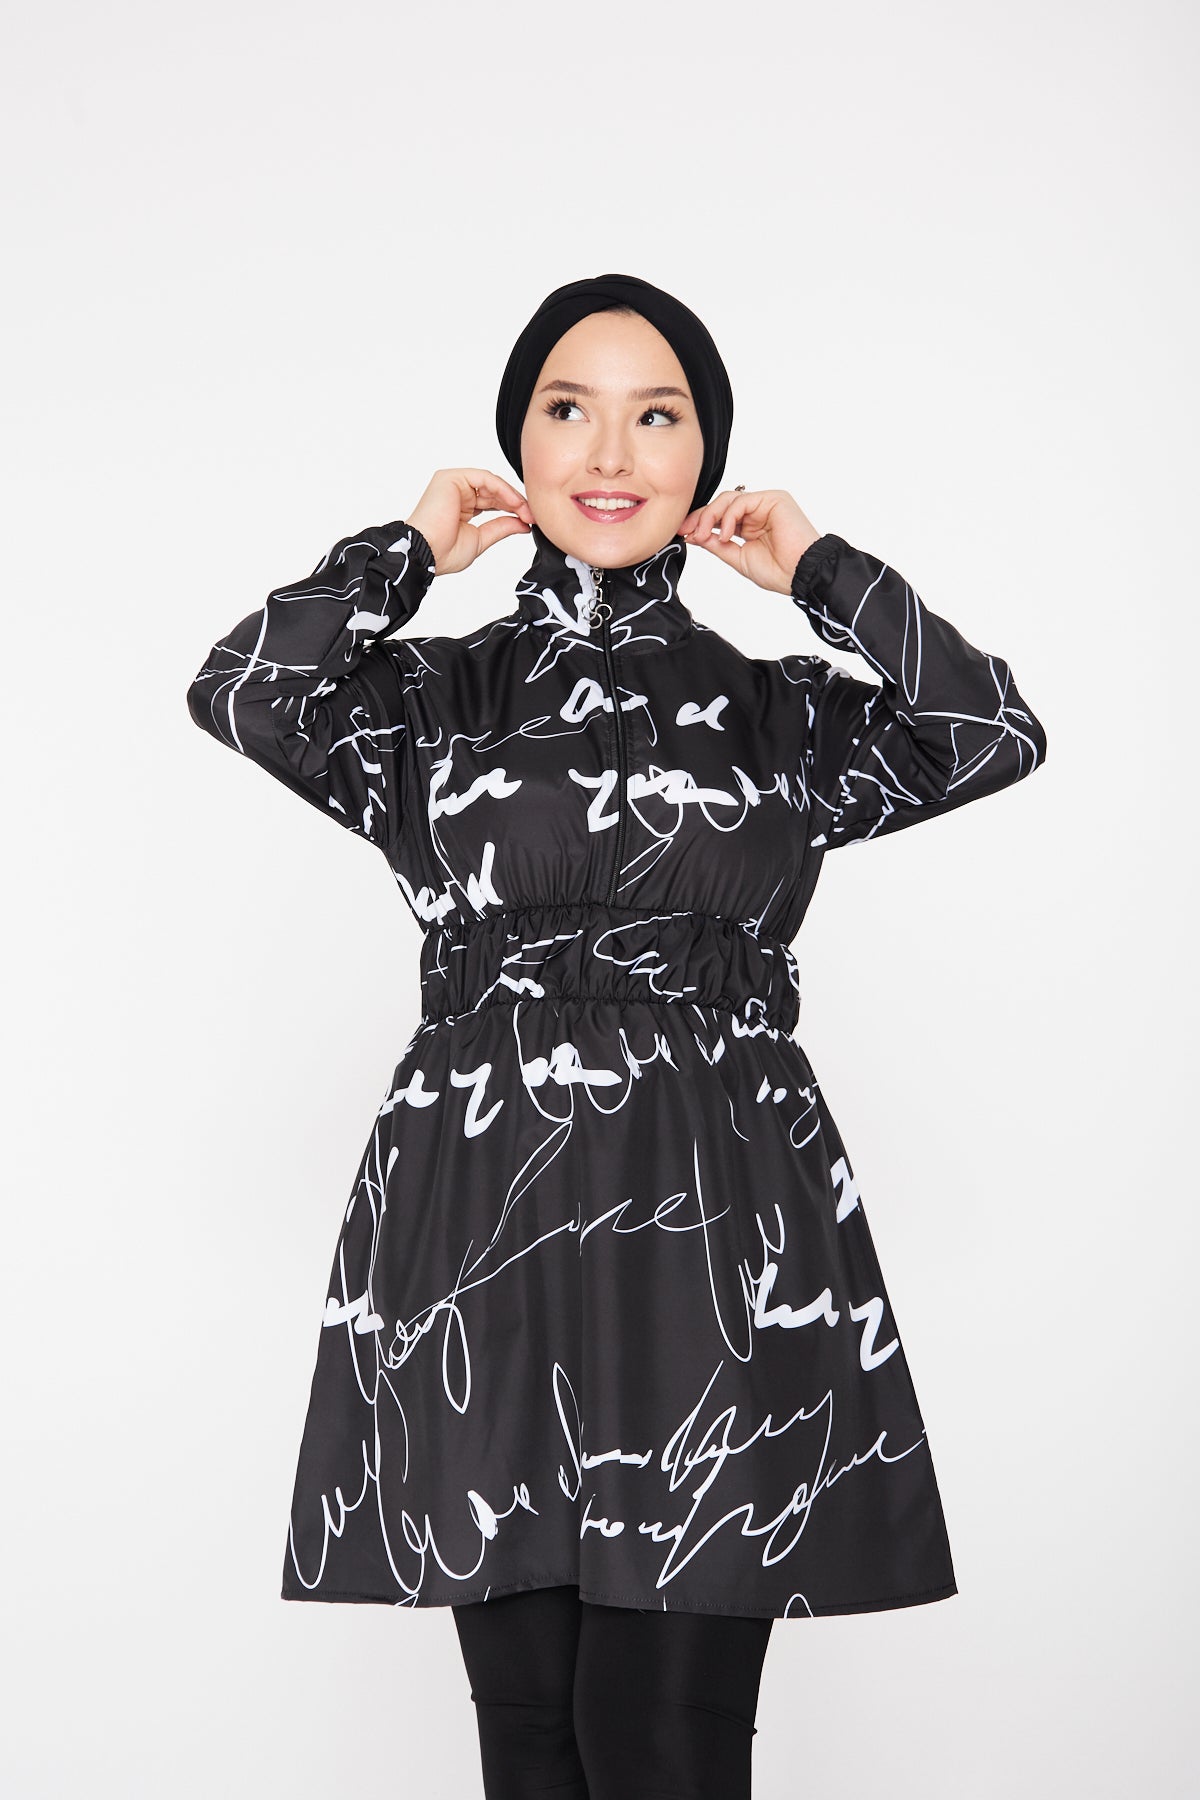 قطعة واحدة من ملابس السباحة ذات الياقة المدورة للحجاب